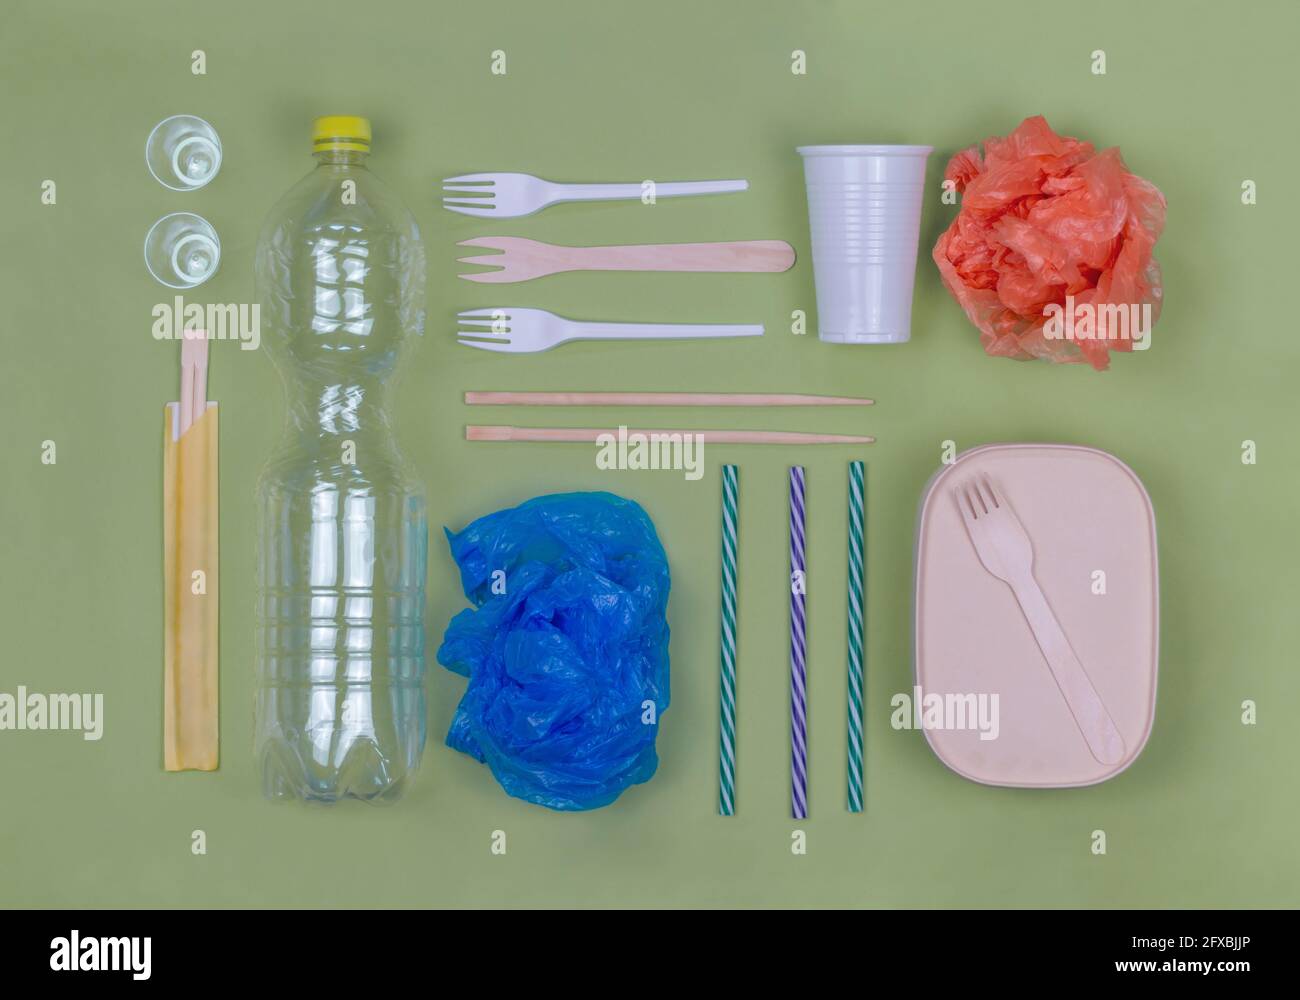 https://c8.alamy.com/comp/2FXBJJP/studio-shot-of-arrangement-of-plastic-items-including-forks-bottle-bags-and-drinking-straws-2FXBJJP.jpg